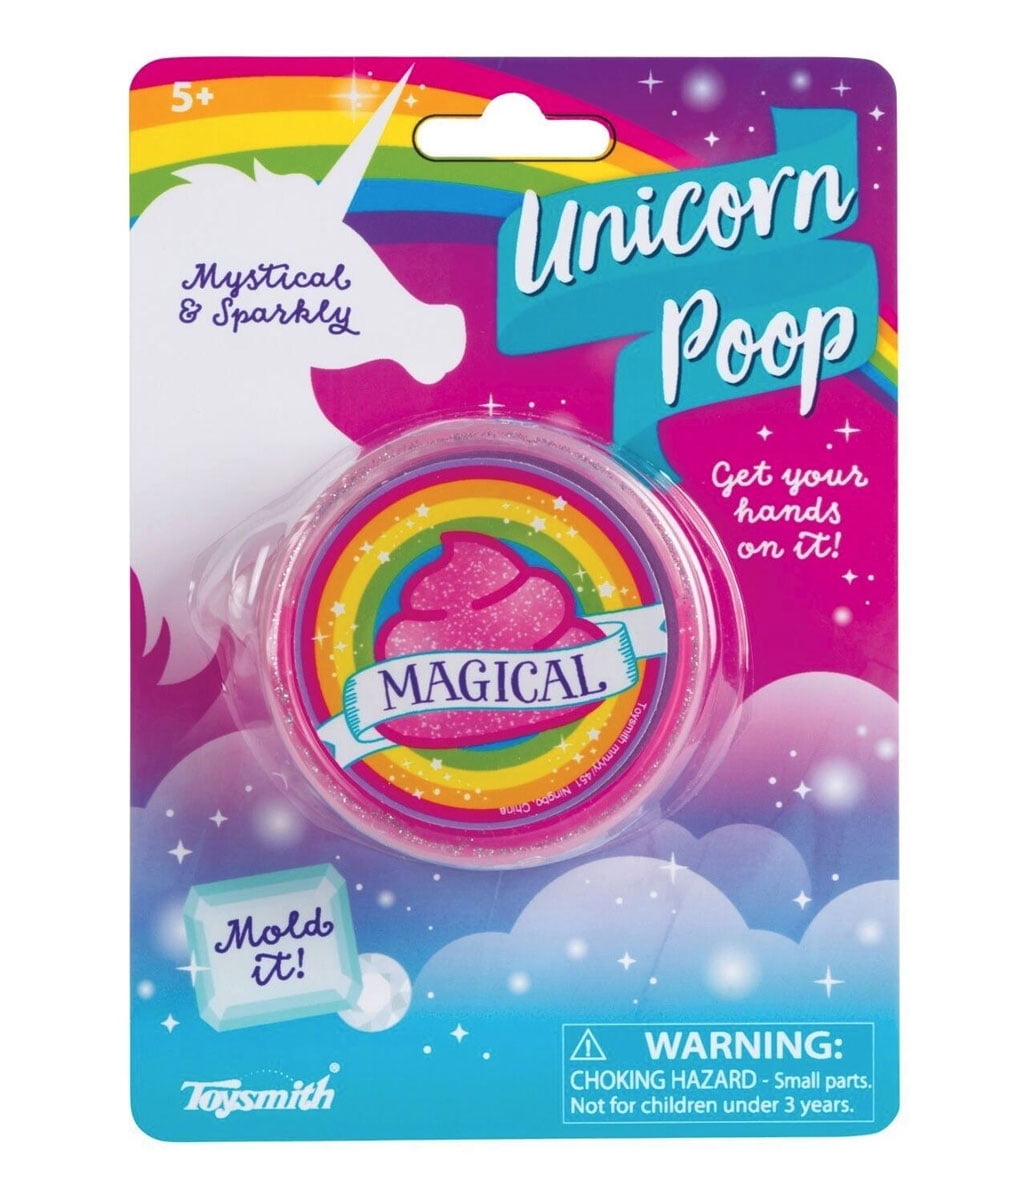 Magic Unicorn Reindeer Glitter Poo or Bogies Slime Clay Putty Kids Toy Gift c85 